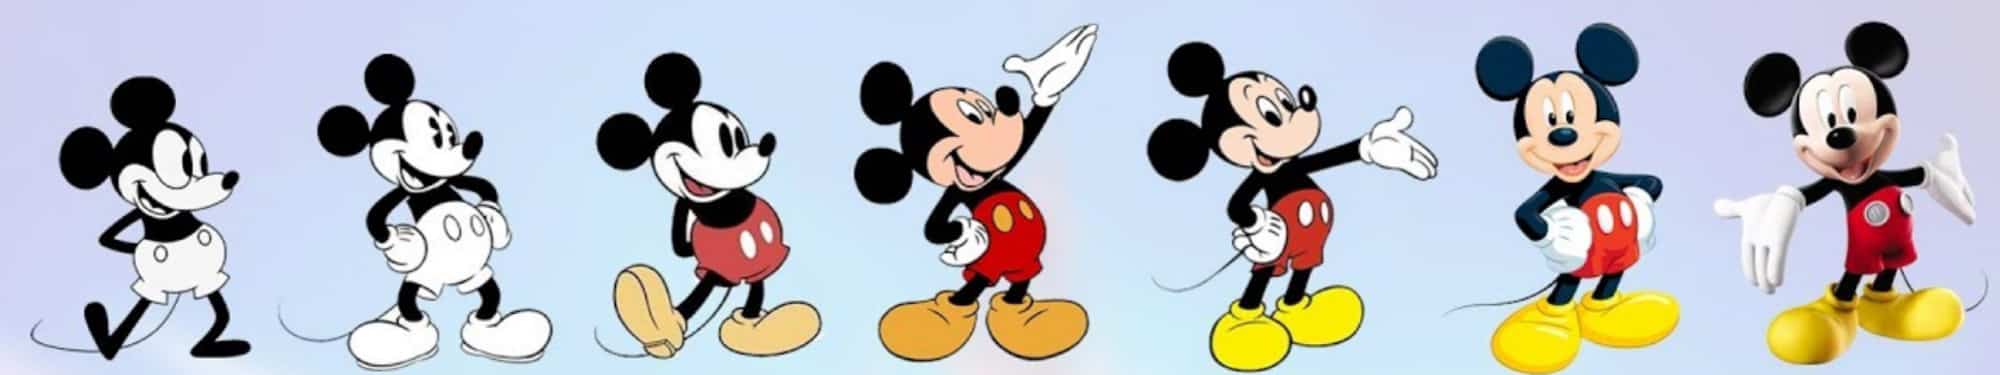 迪士尼頻道Disney Channel 更新LOGO，移除米老鼠大耳朵輪廓 14